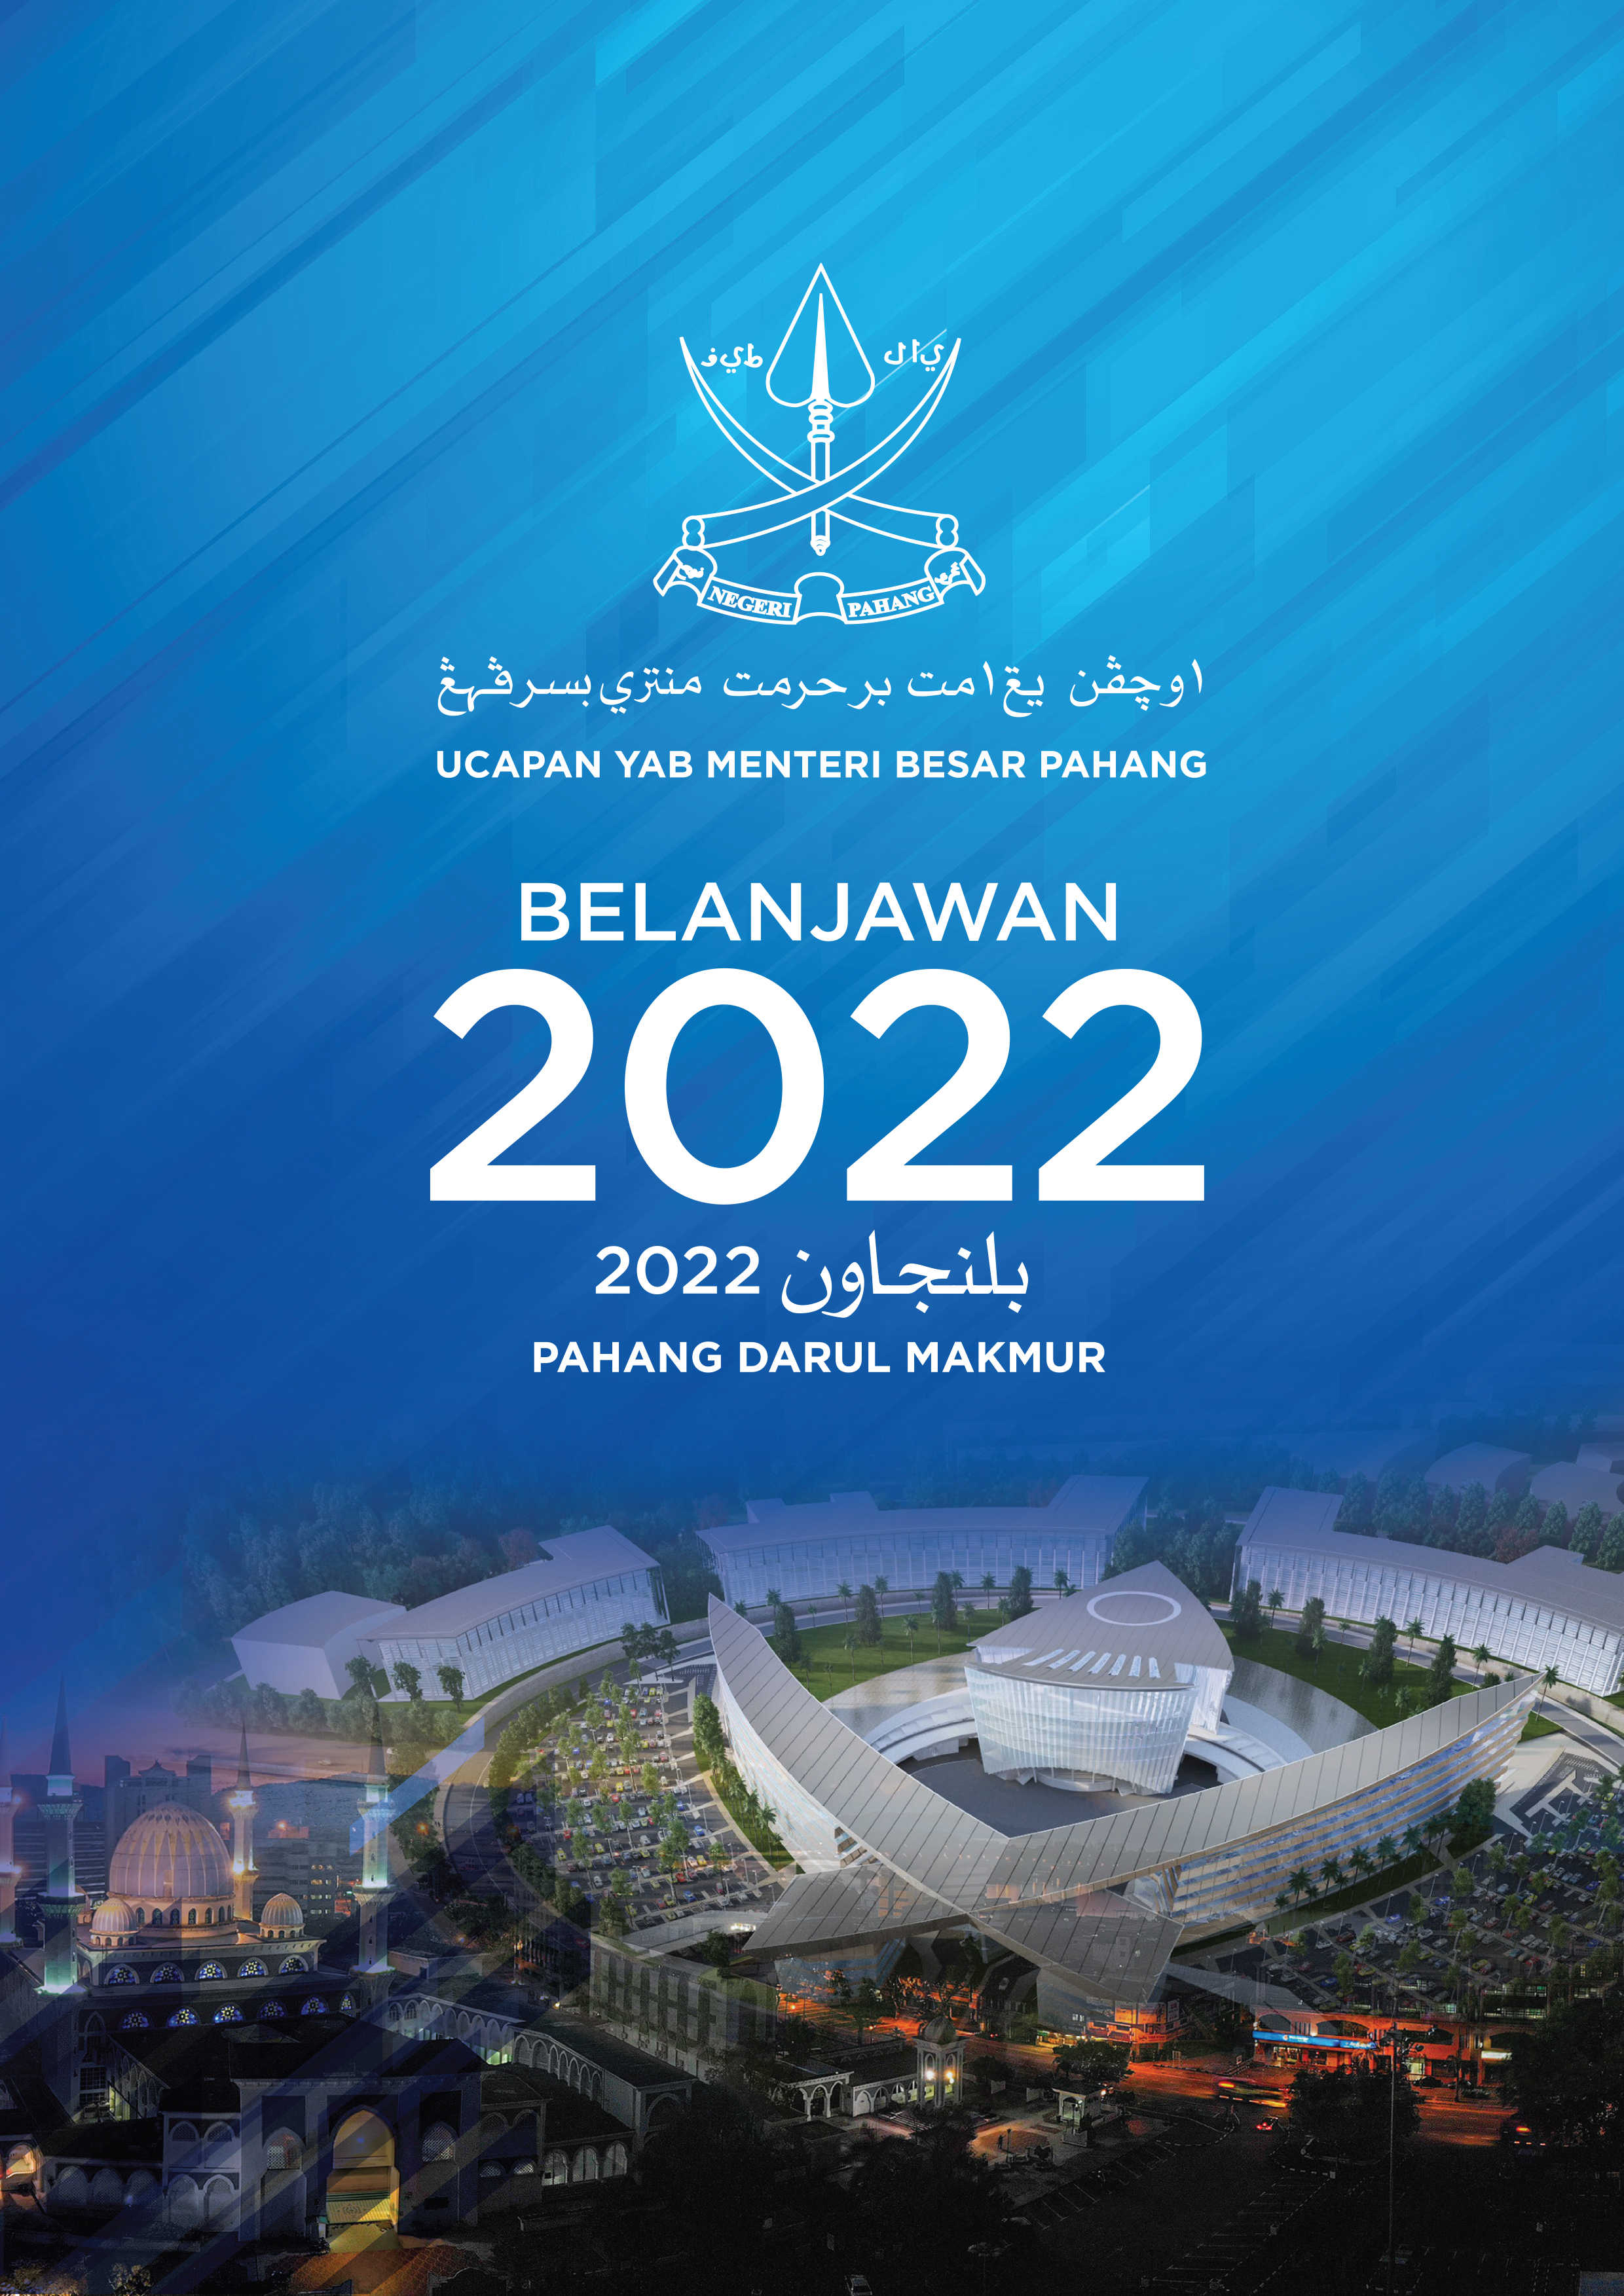 Ucapan Belanjawan 2022 Pahang Darul Makmur